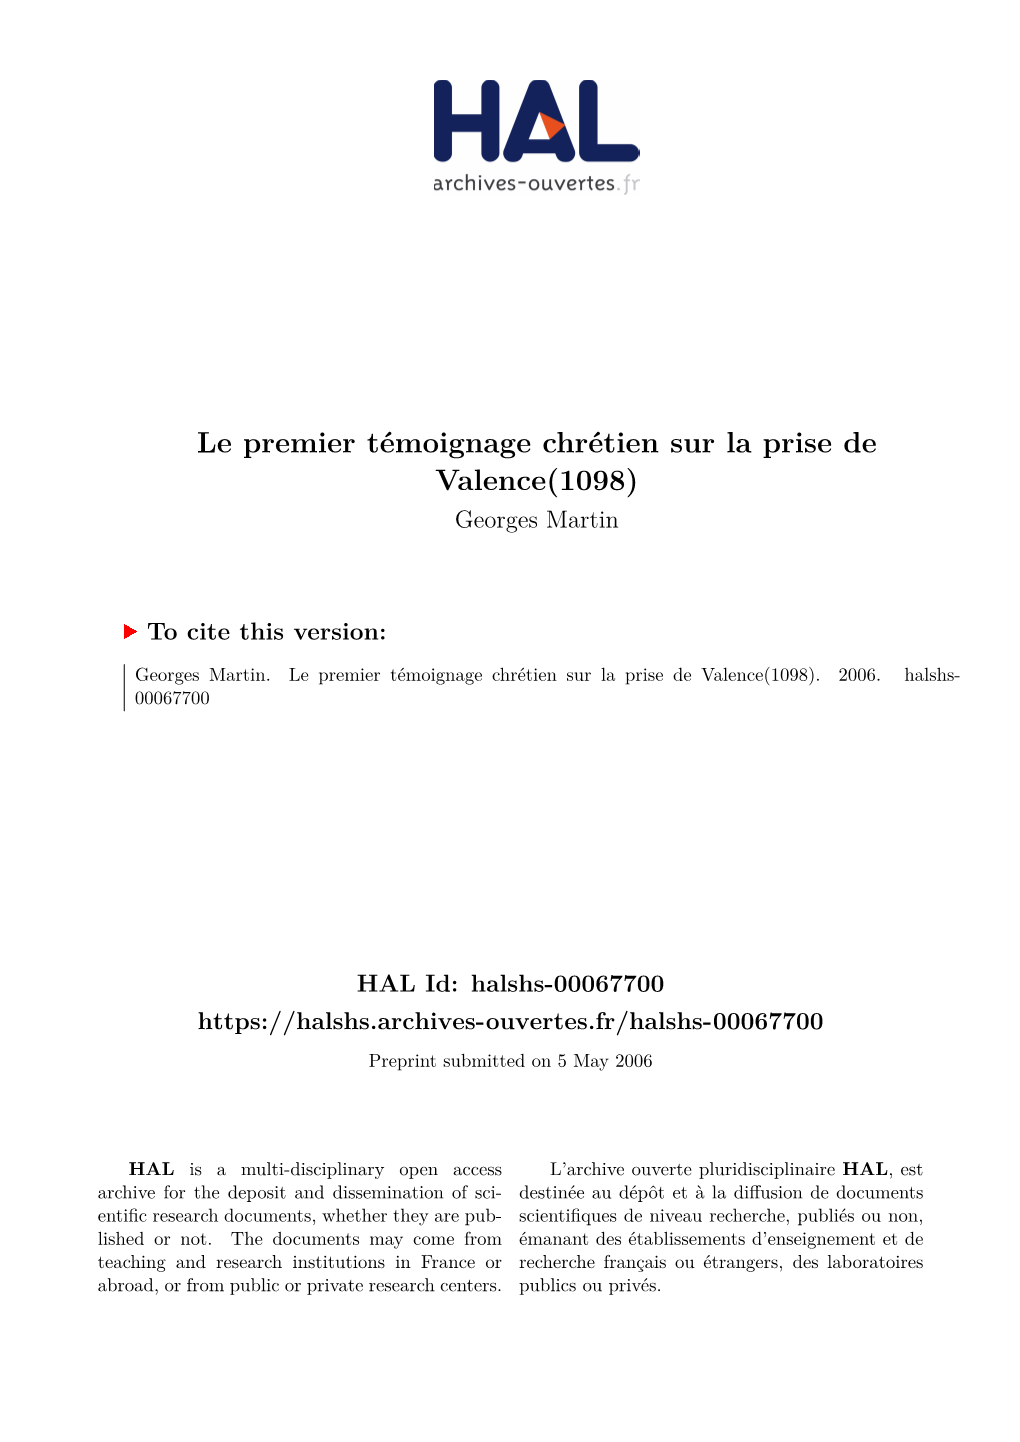 Le Premier Témoignage Chrétien Sur La Prise De Valence(1098) Georges Martin